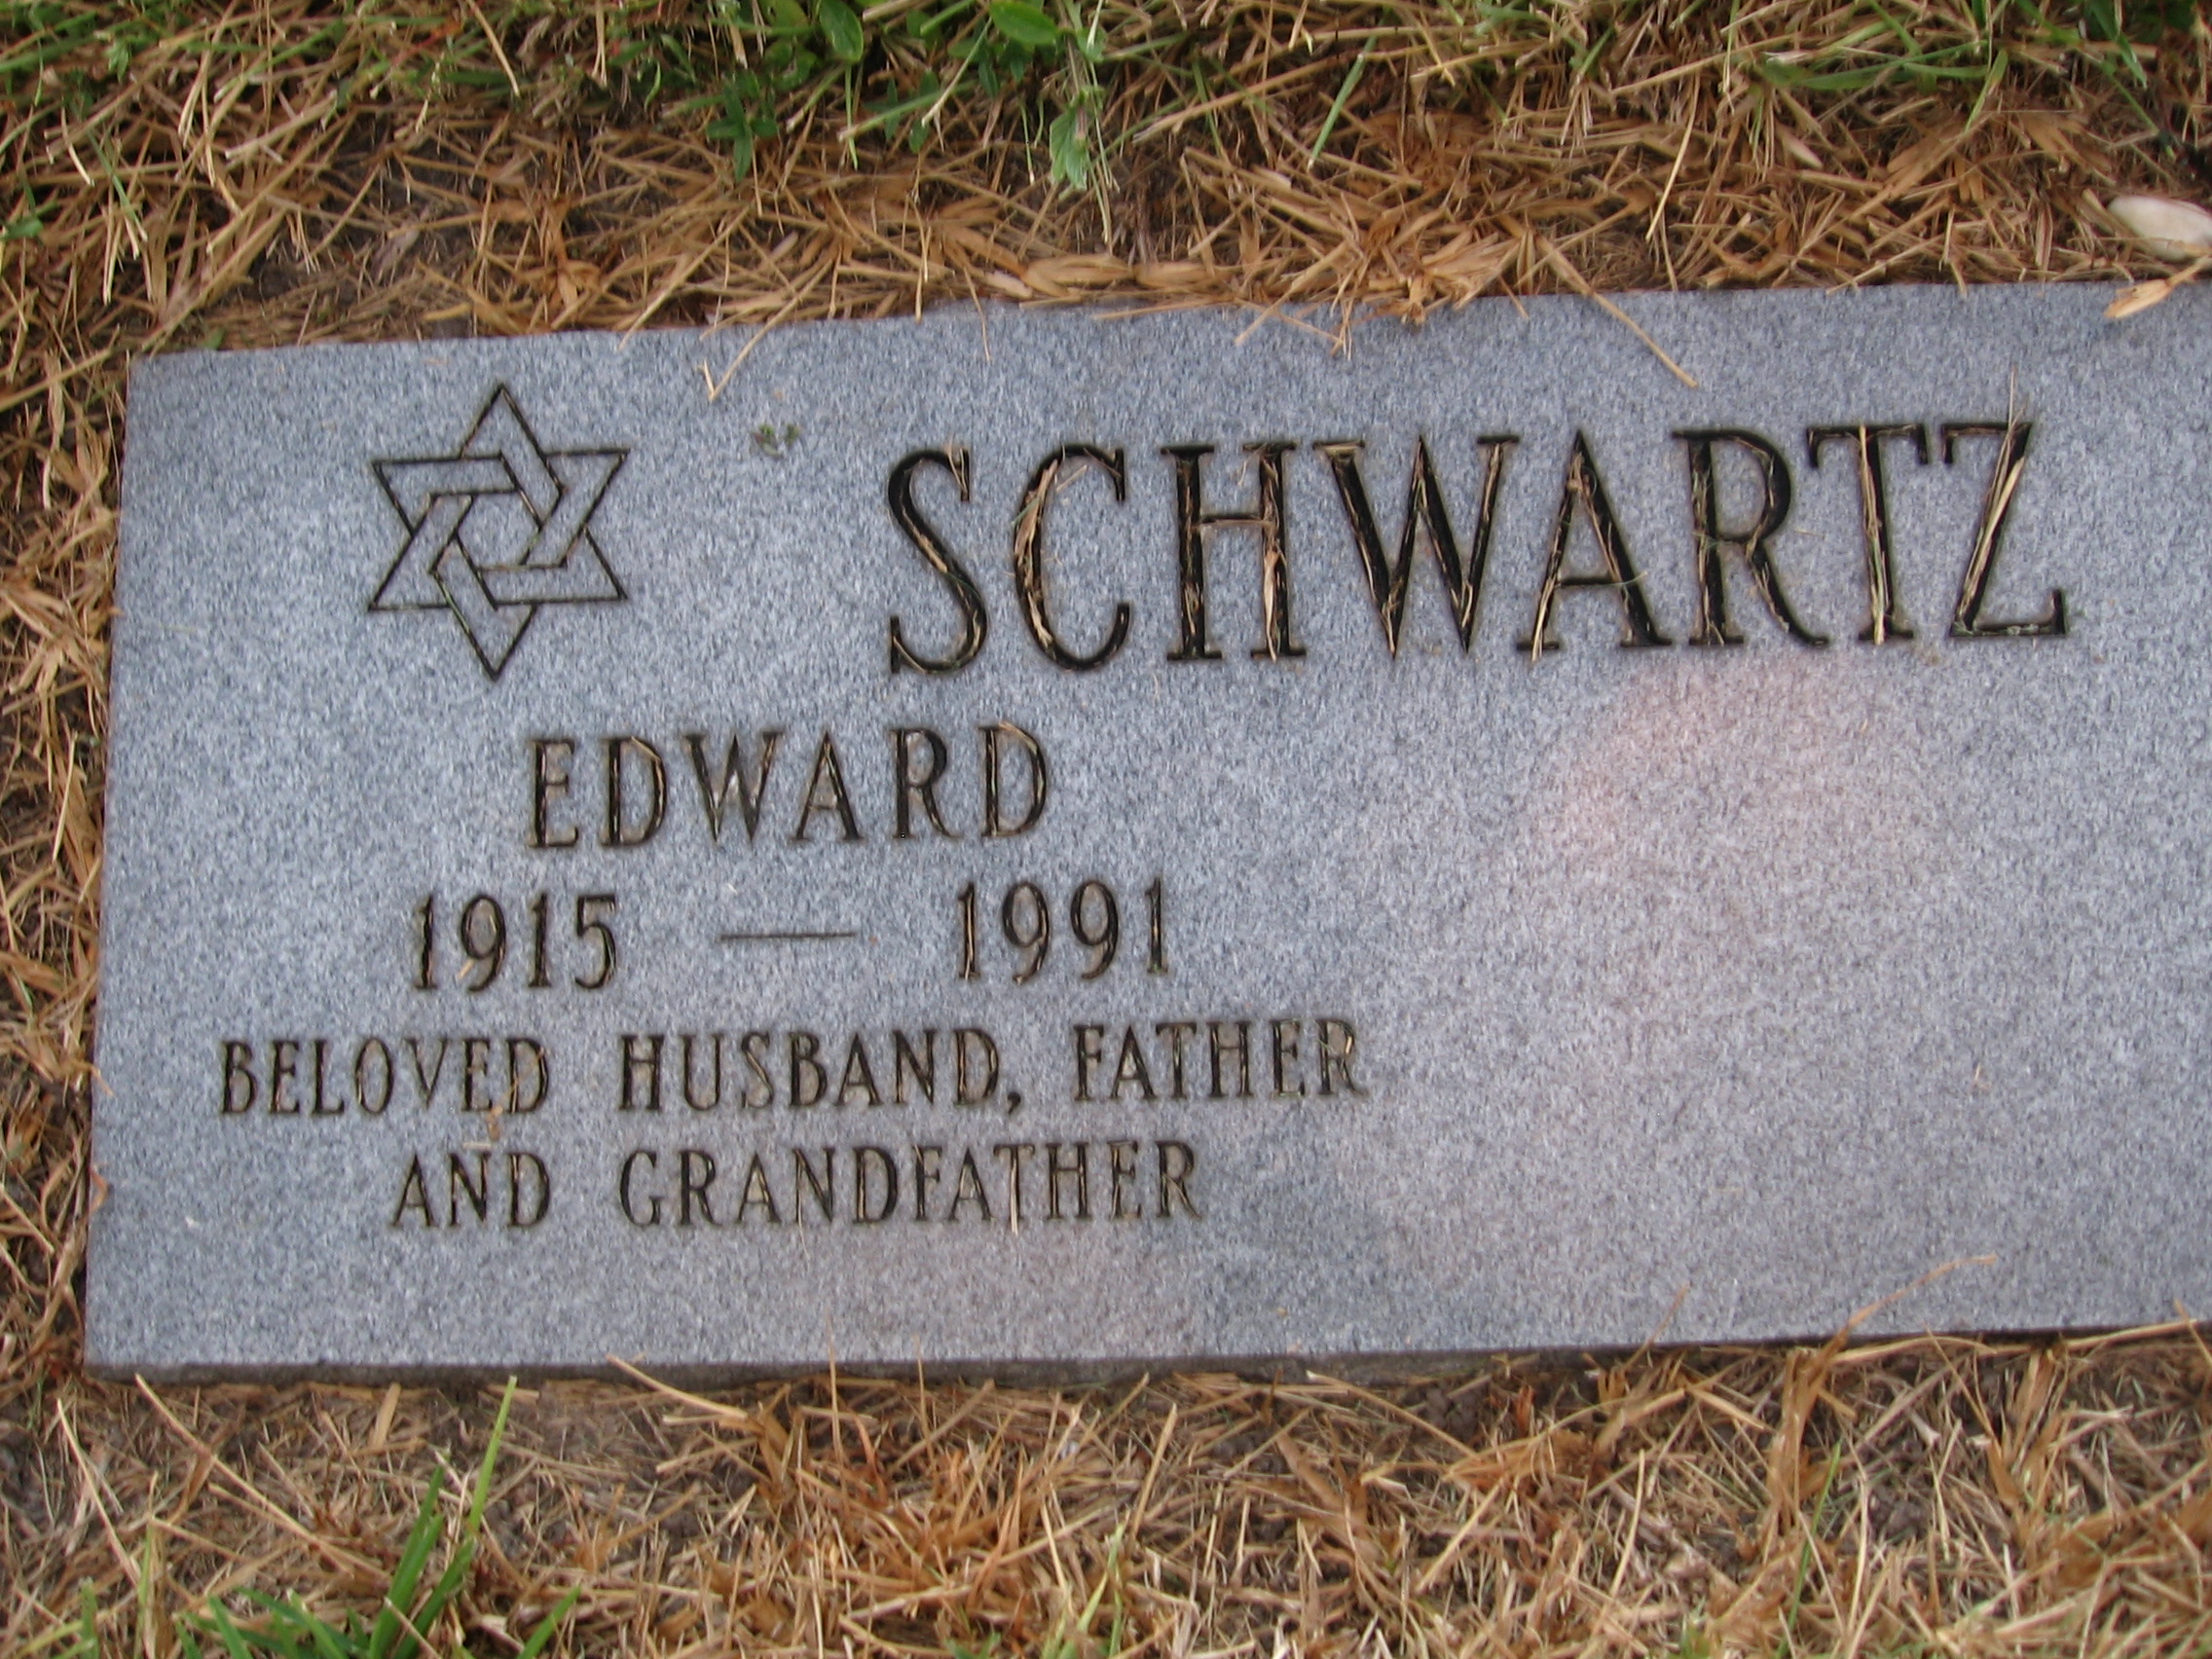 Edward Schwartz